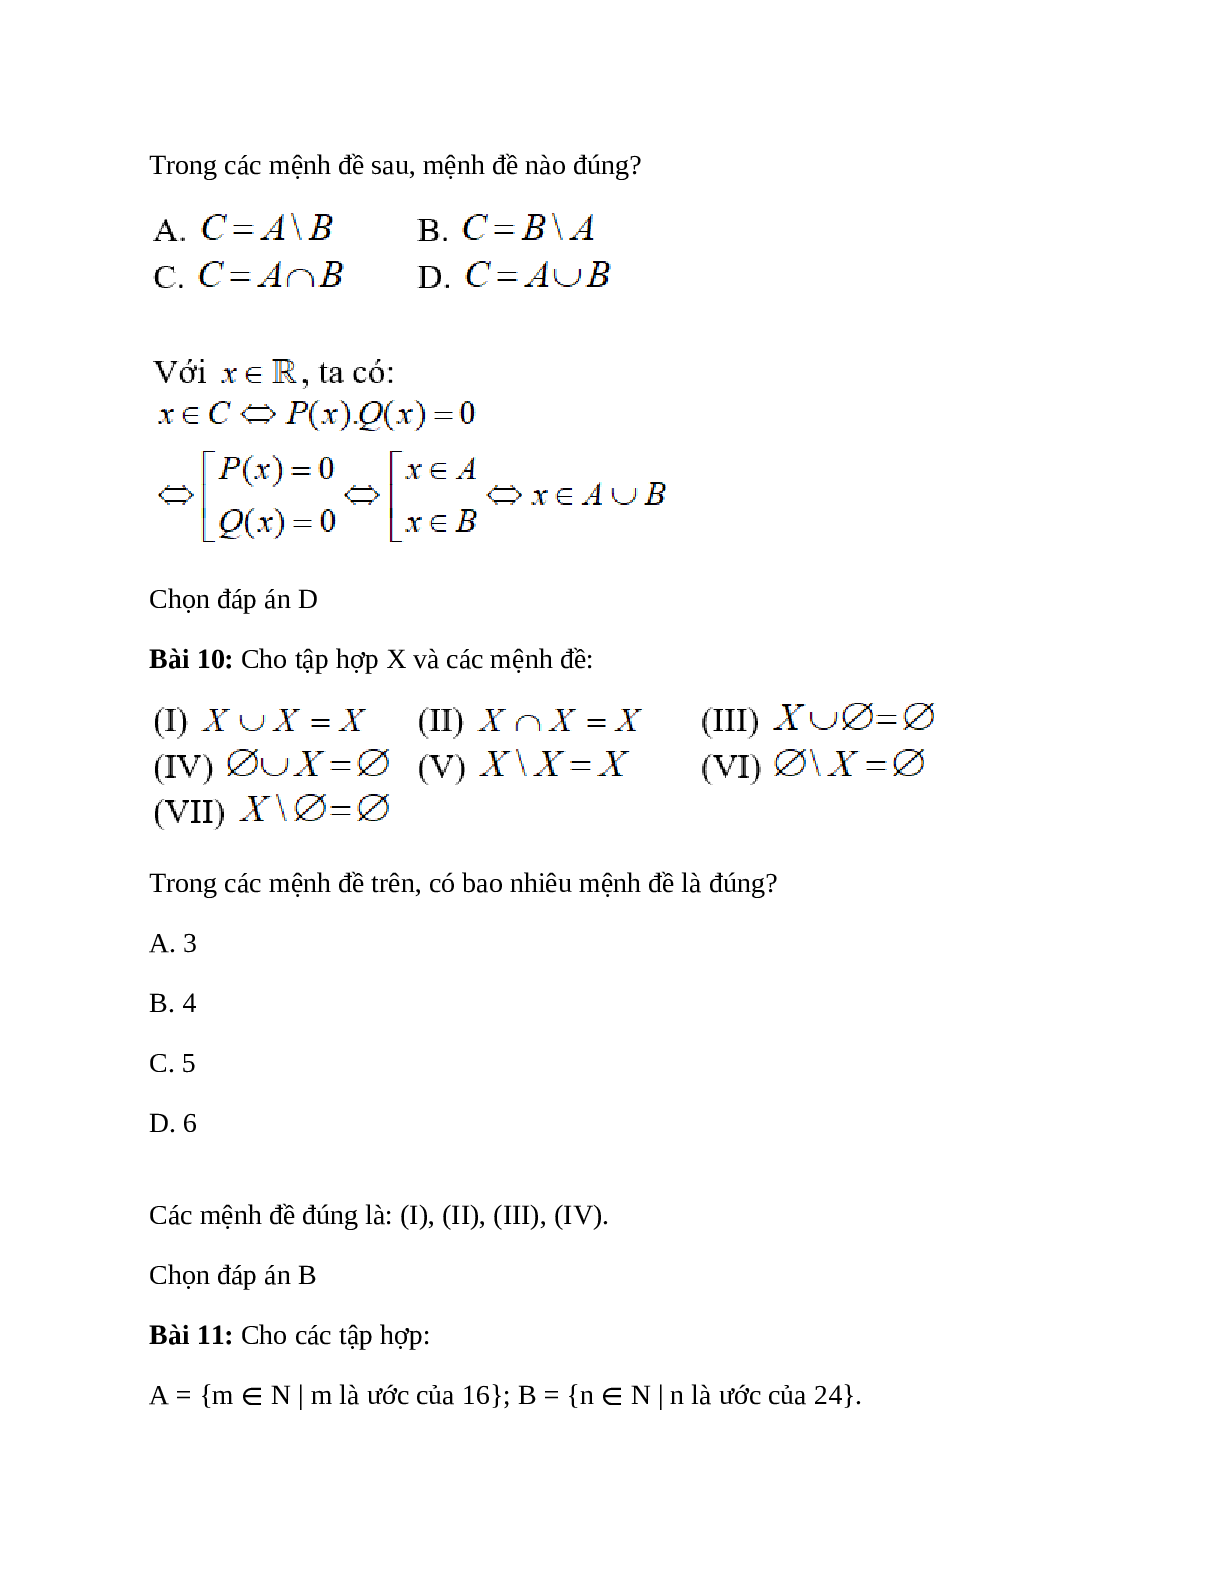 Trắc nghiệm Các phép toán tập hợp có đáp án – Toán lớp 10 (trang 6)